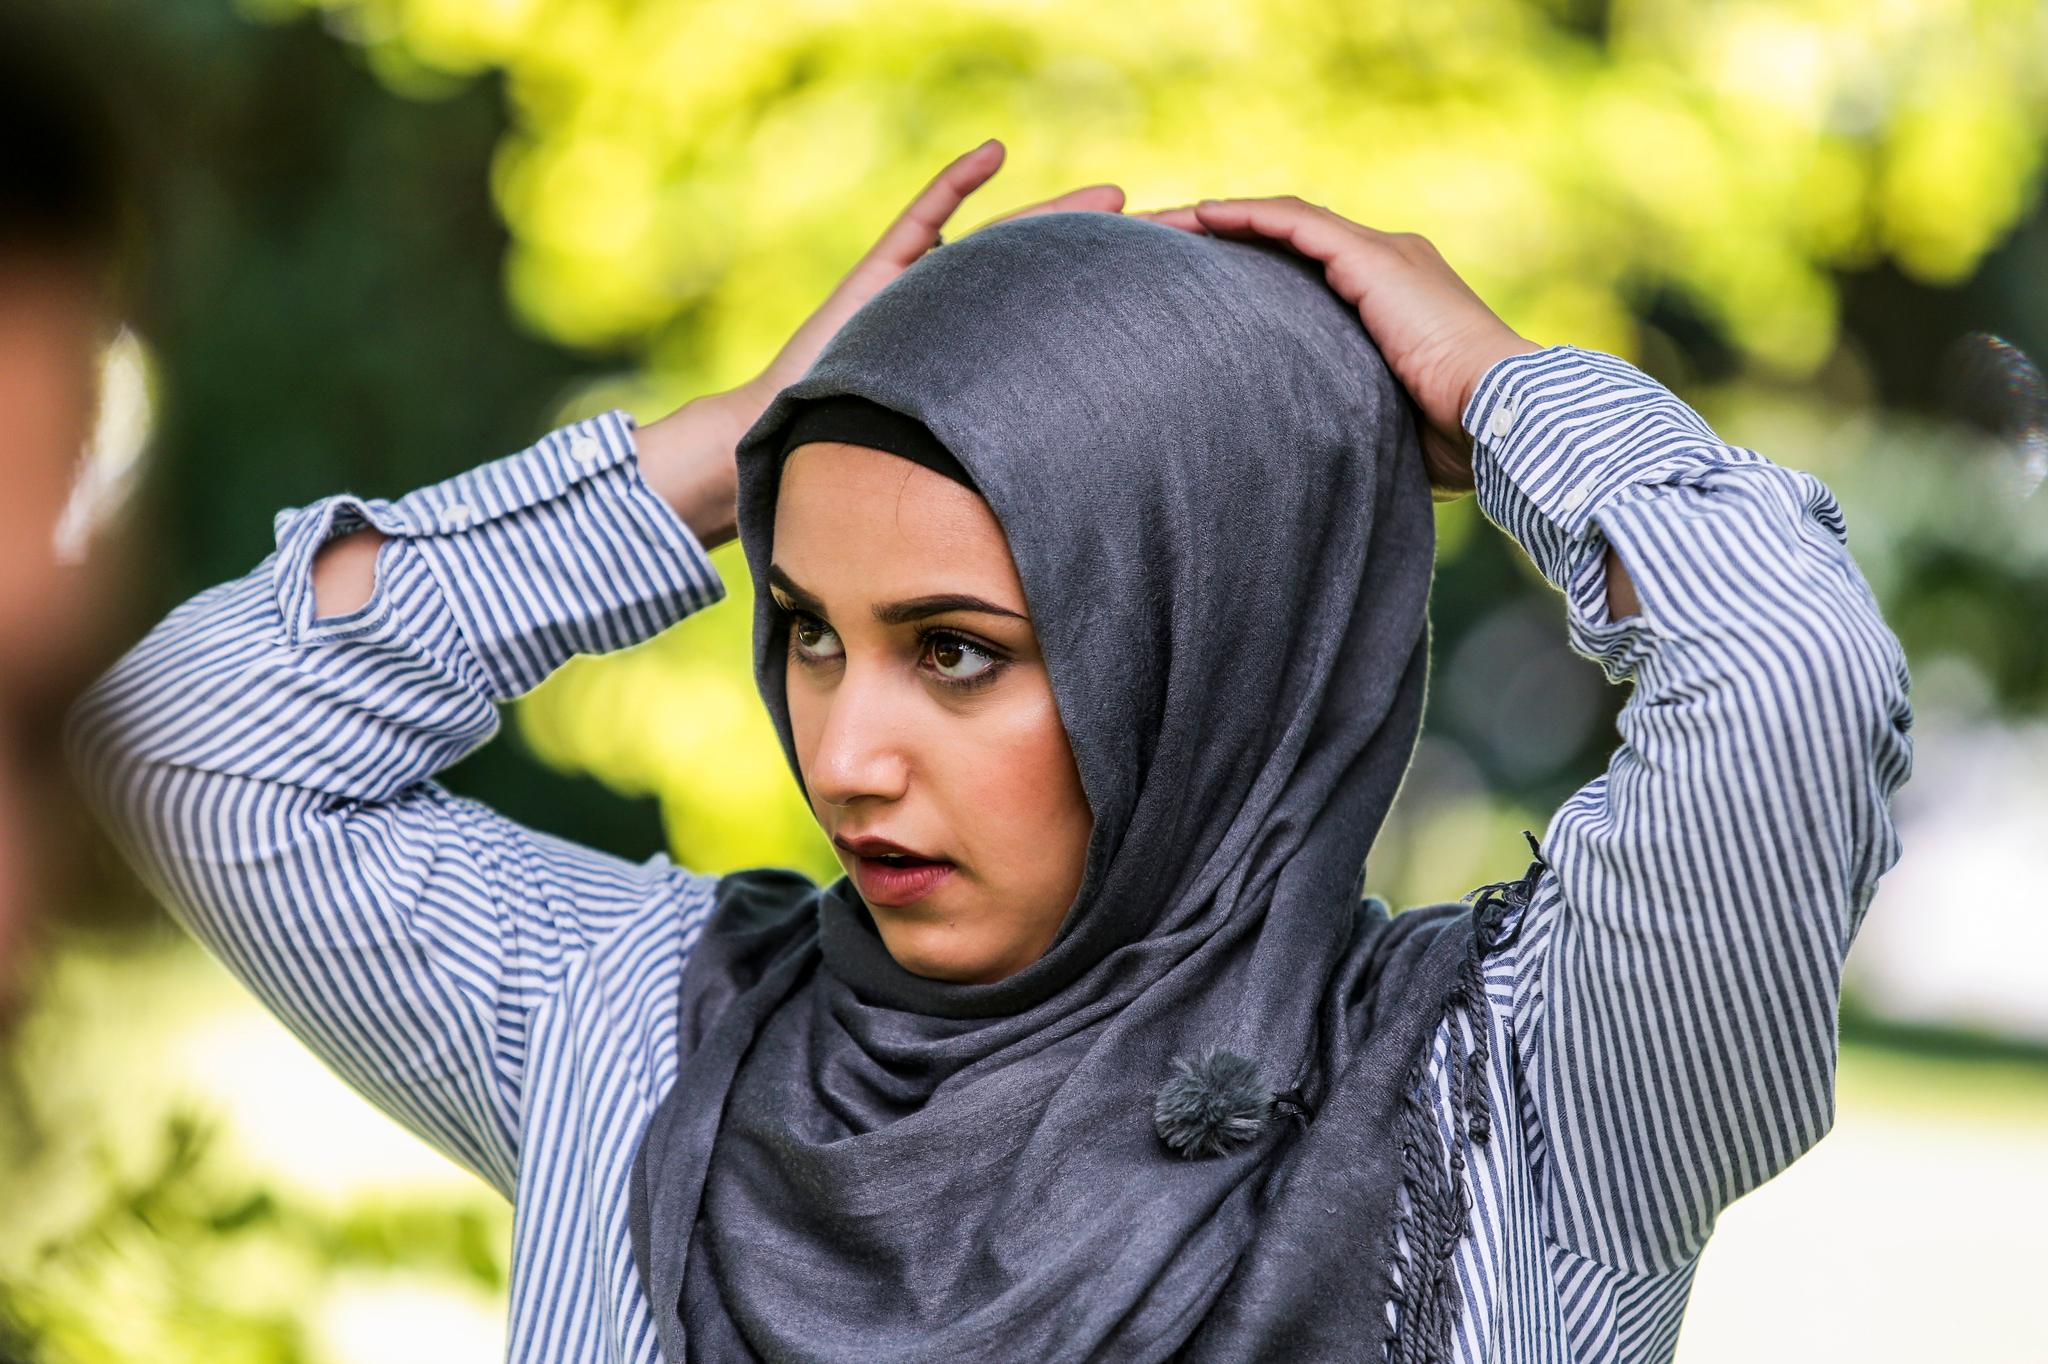  Hvorfor mener enkelte at man ikke skal få lov til å bruke hijab på norsk TV da? spør Anna (17).